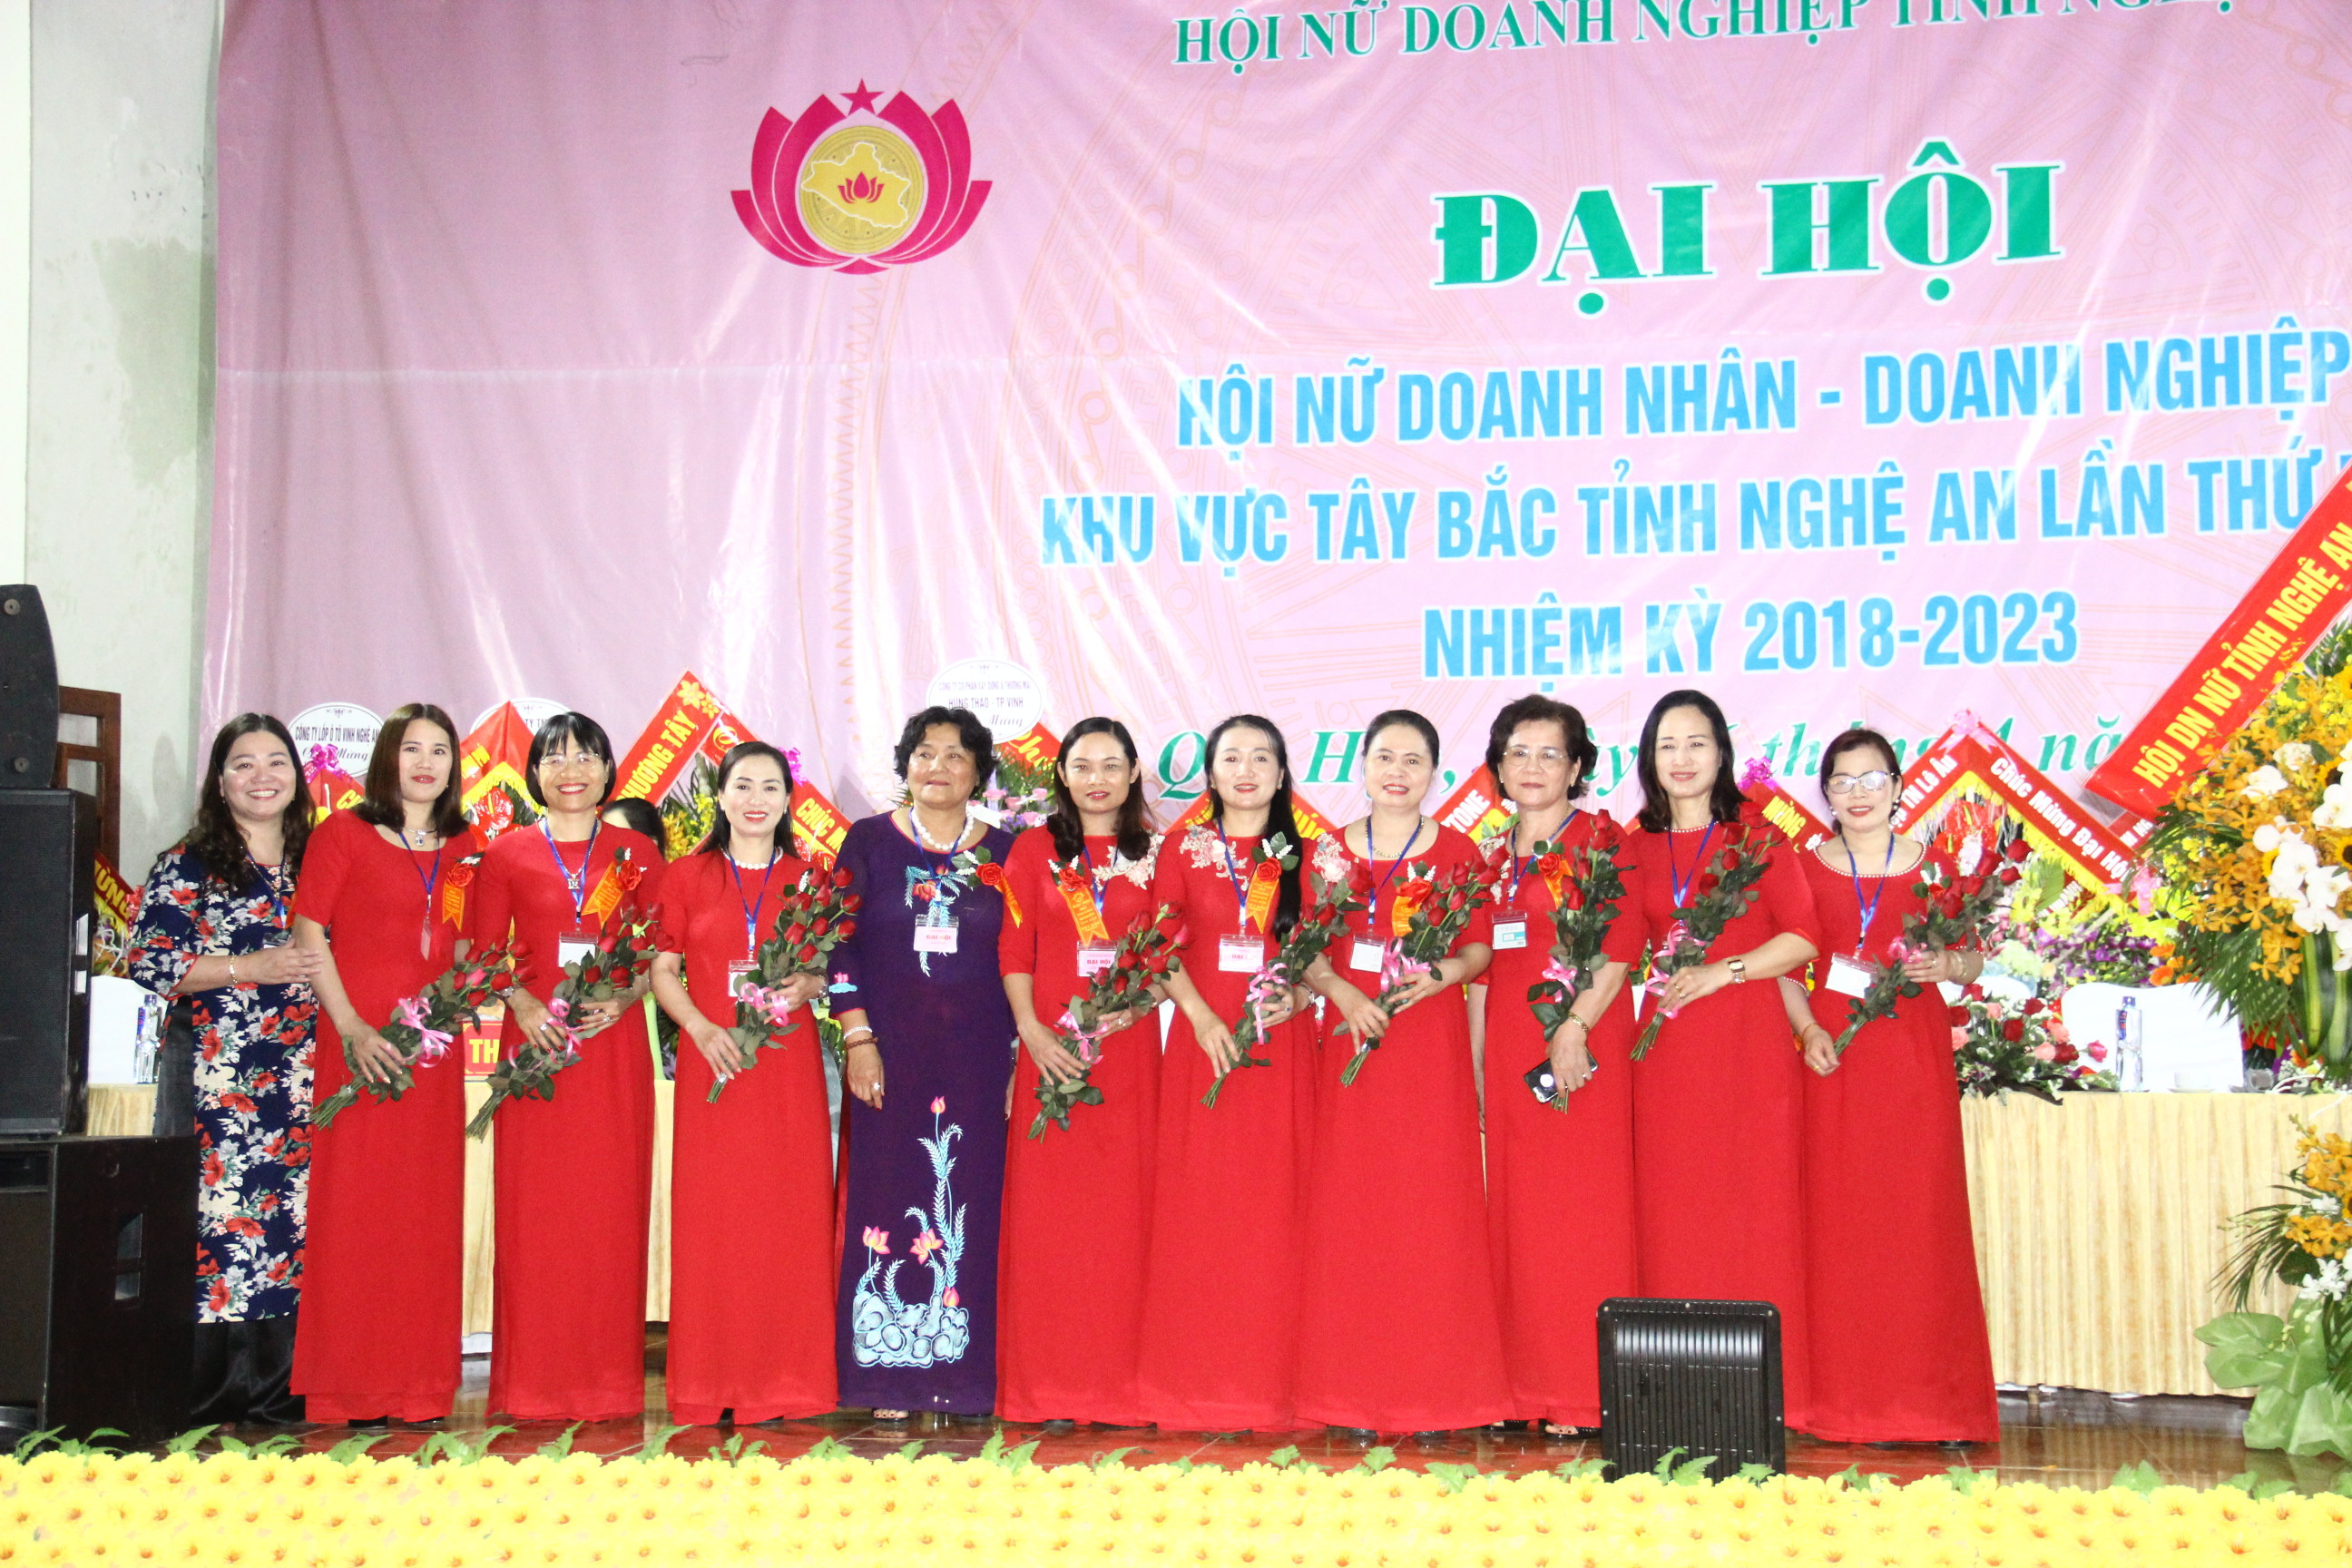 Ra mắt BCH Chi hội nữ doanh nhân - doanh nghiệp khu vực Tây Bắc. Ảnh: Hoàng Vĩnh